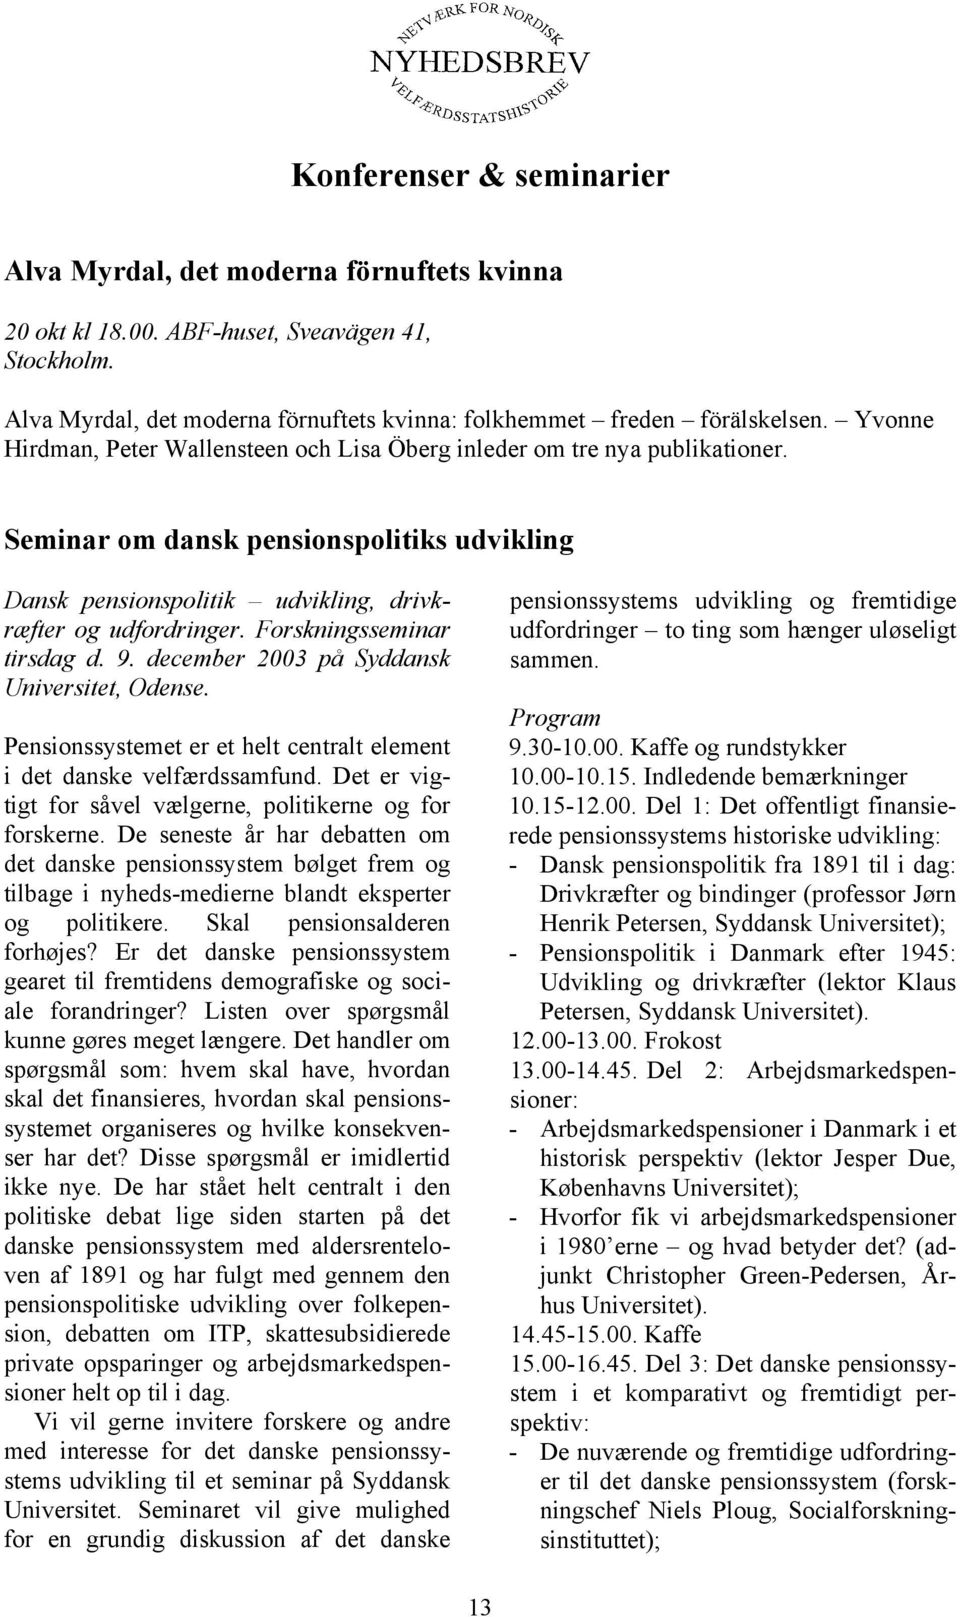 Forskningsseminar tirsdag d. 9. december 2003 på Syddansk Universitet, Odense. Pensionssystemet er et helt centralt element i det danske velfærdssamfund.